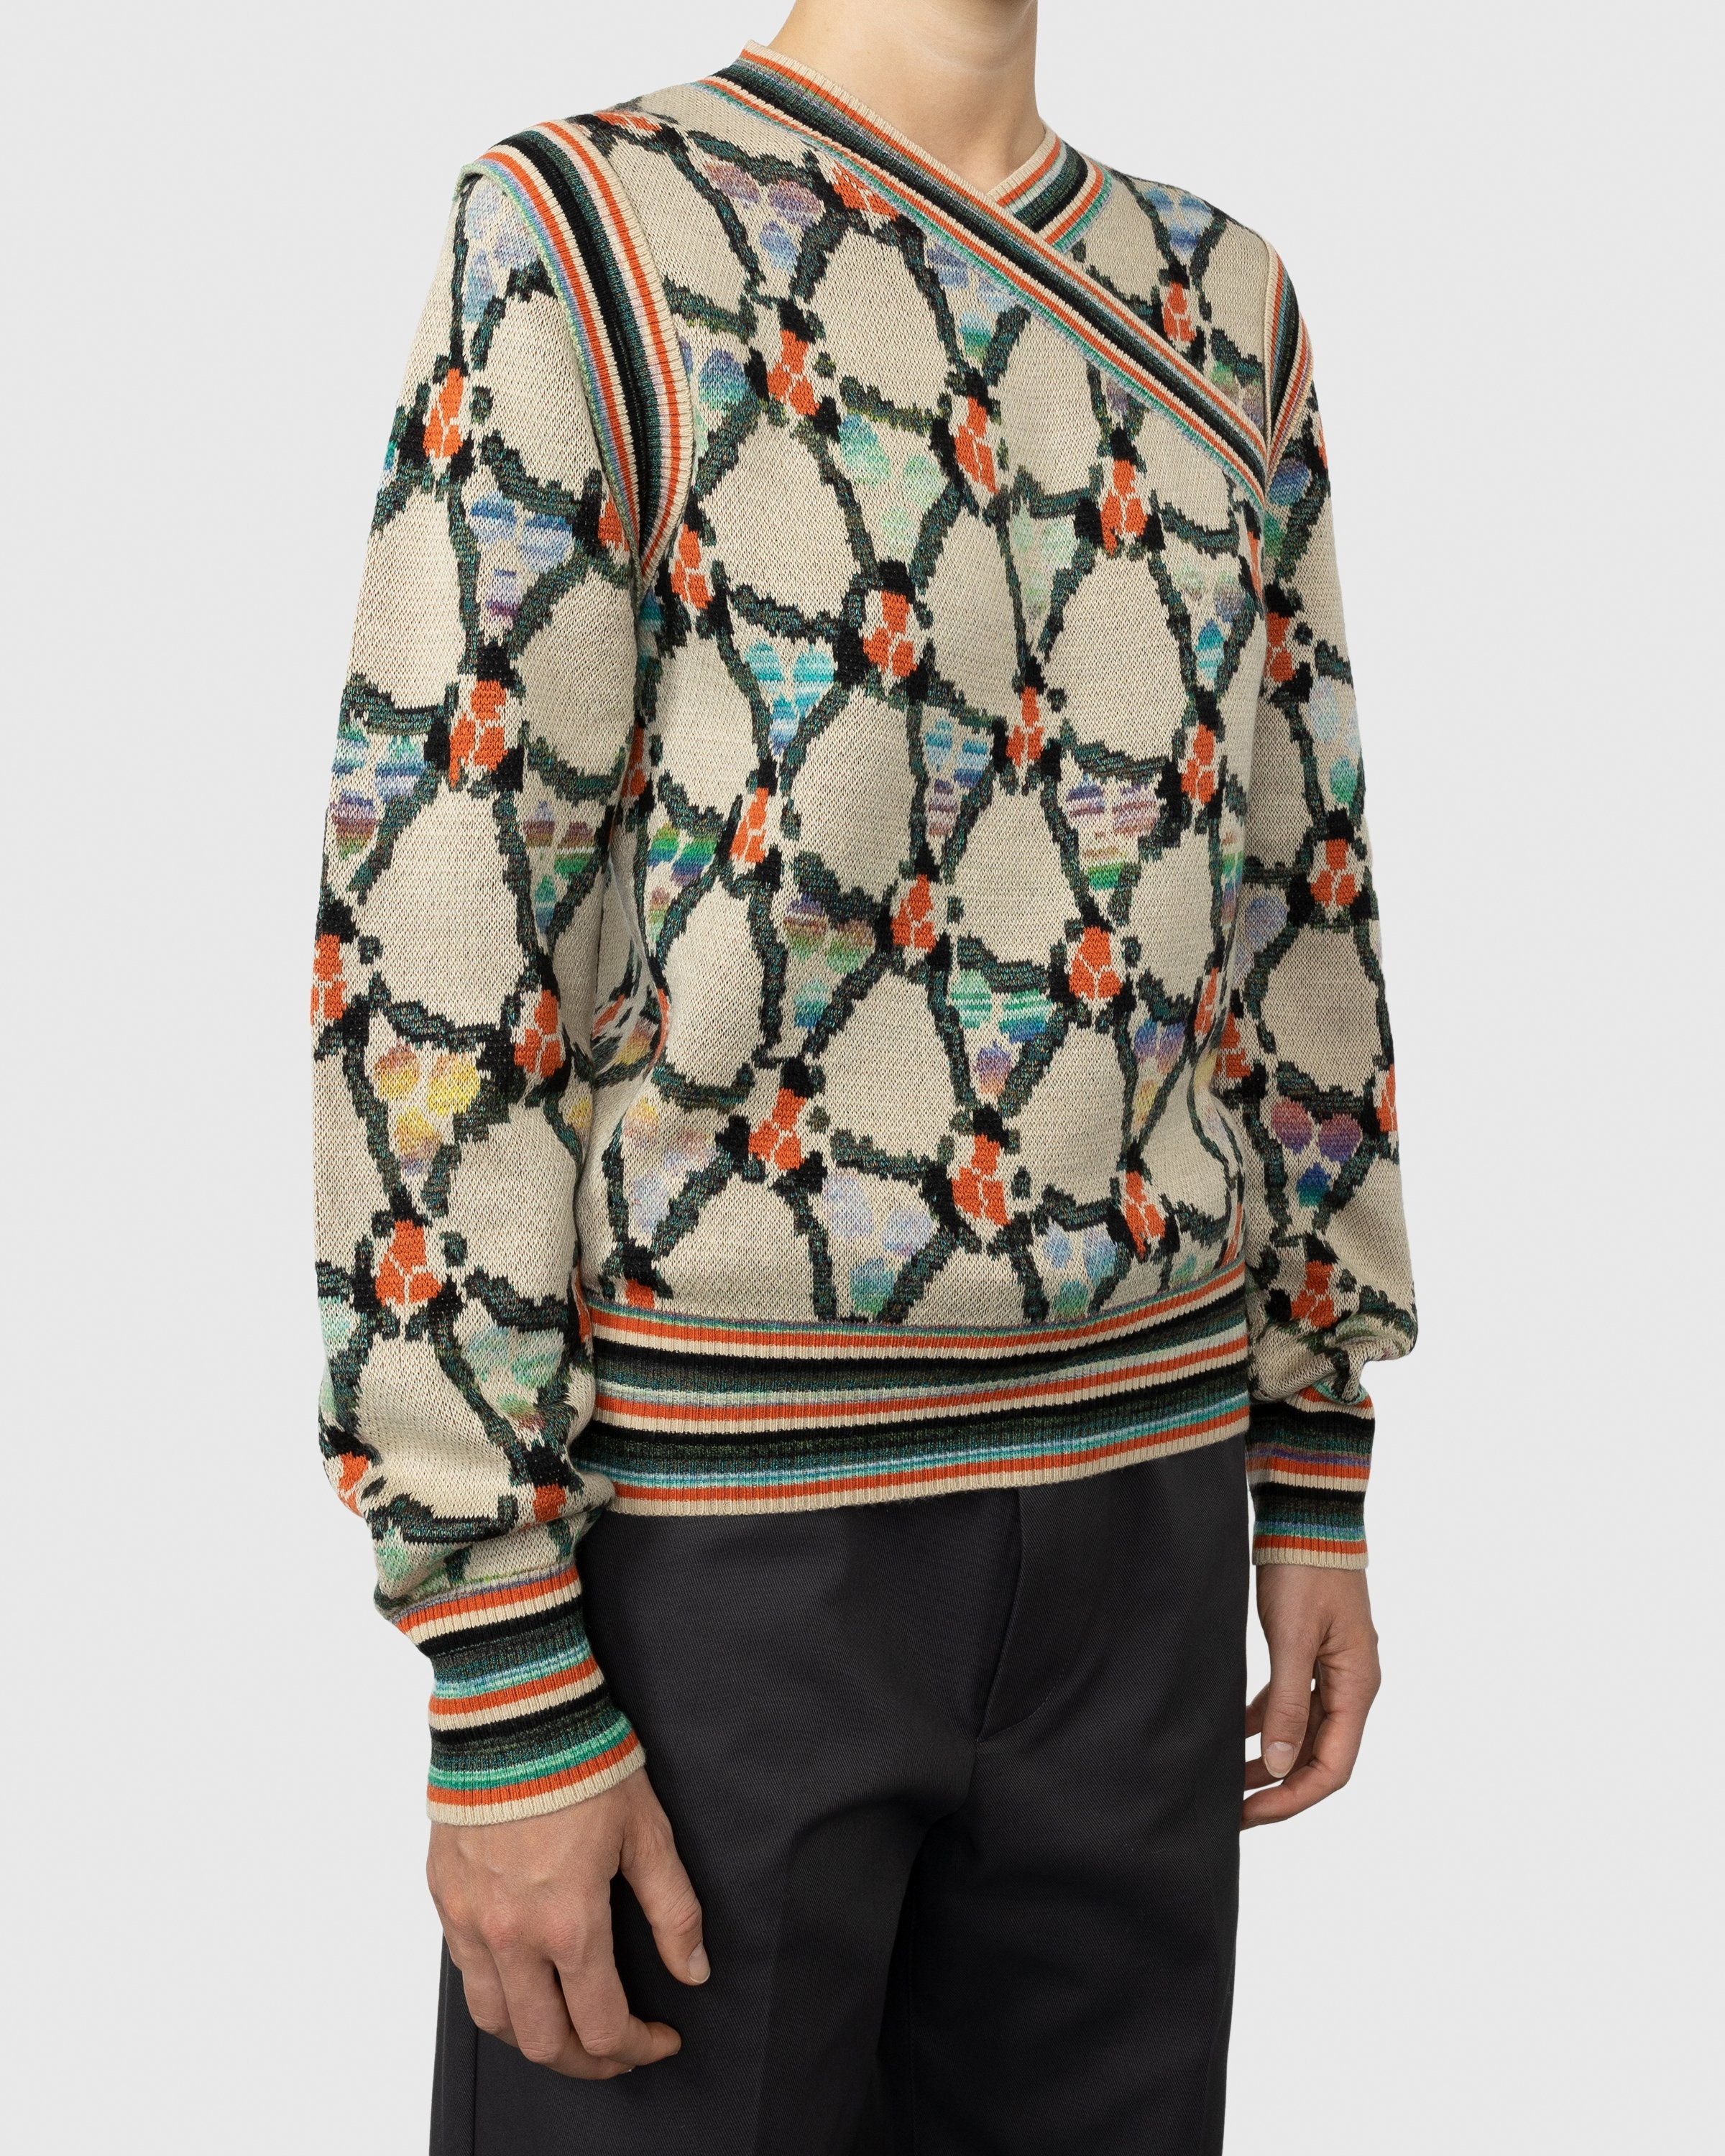 Acne Studios – Wrapped Sweater Beige - Knitwear - Multi - Image 3